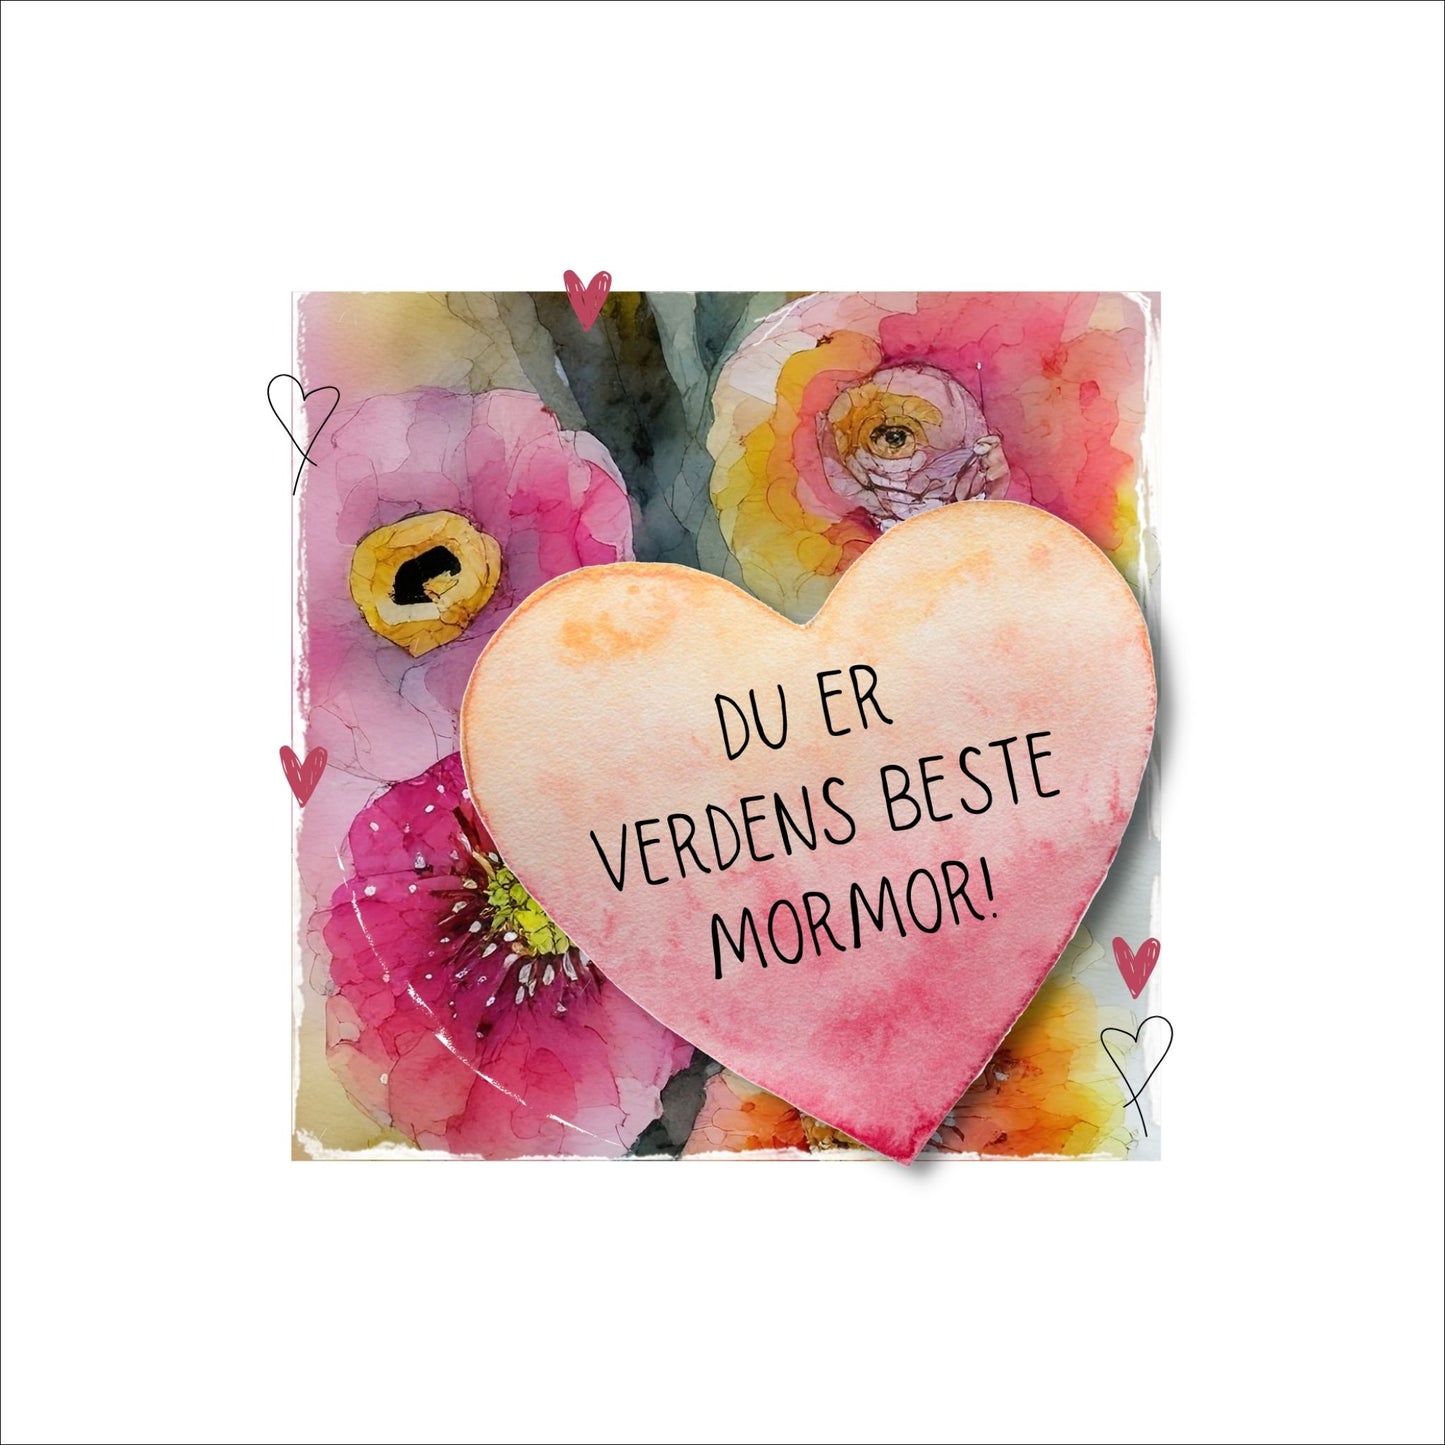 Grafisk plakat med et rosa hjerte påført tekst "Du er verdens beste mormor". Bagrunn i cerise og guloransje blomster. Kortet har en hvit kant runt på 4 cm.